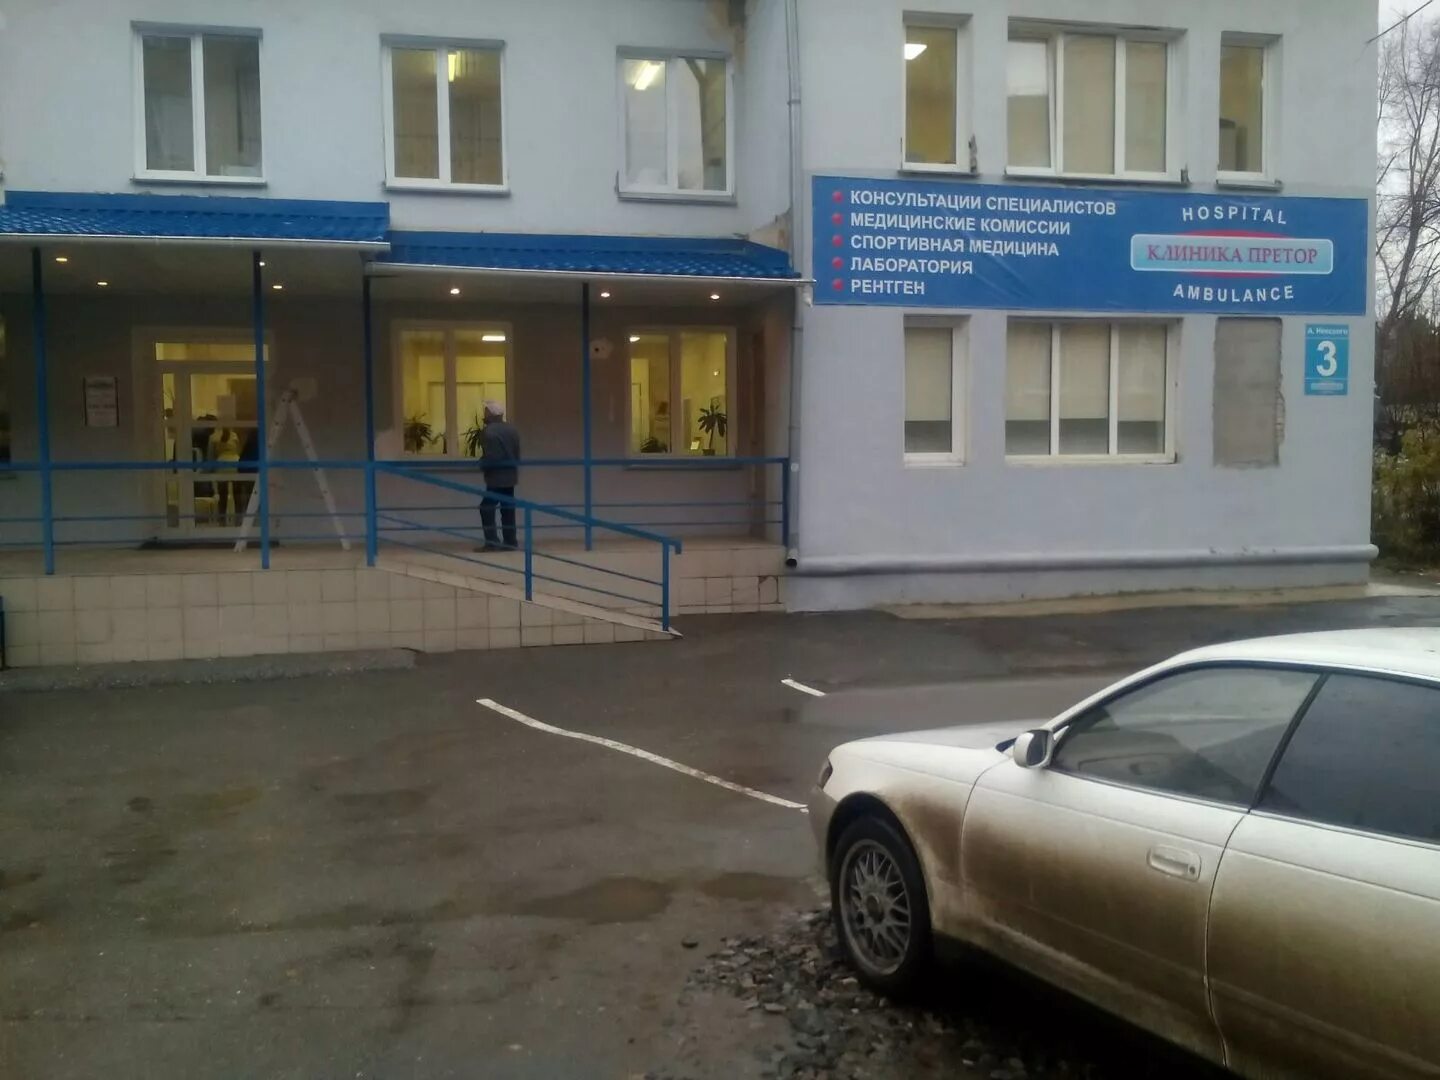 Клиника Претор в Новосибирске Невского 3. Фрунзе 4 Новосибирск Претор.